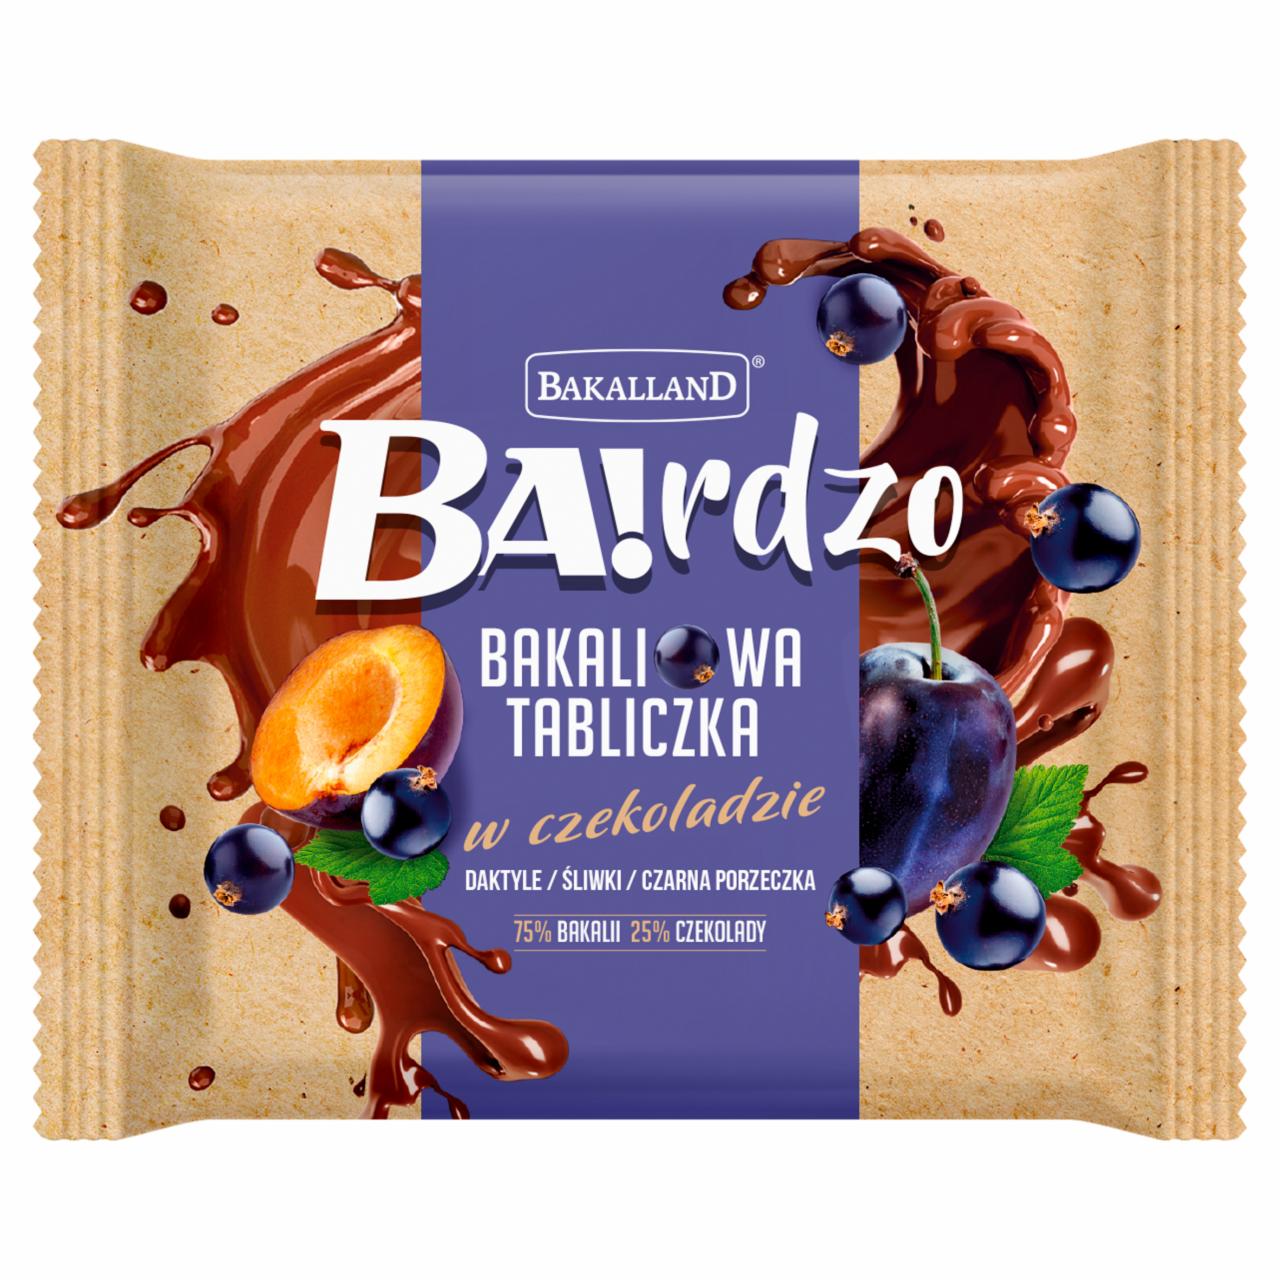 Zdjęcia - Bakalland Ba!rdzo Bakaliowa tabliczka w czekoladzie daktyle śliwki czarna porzeczka 65 g